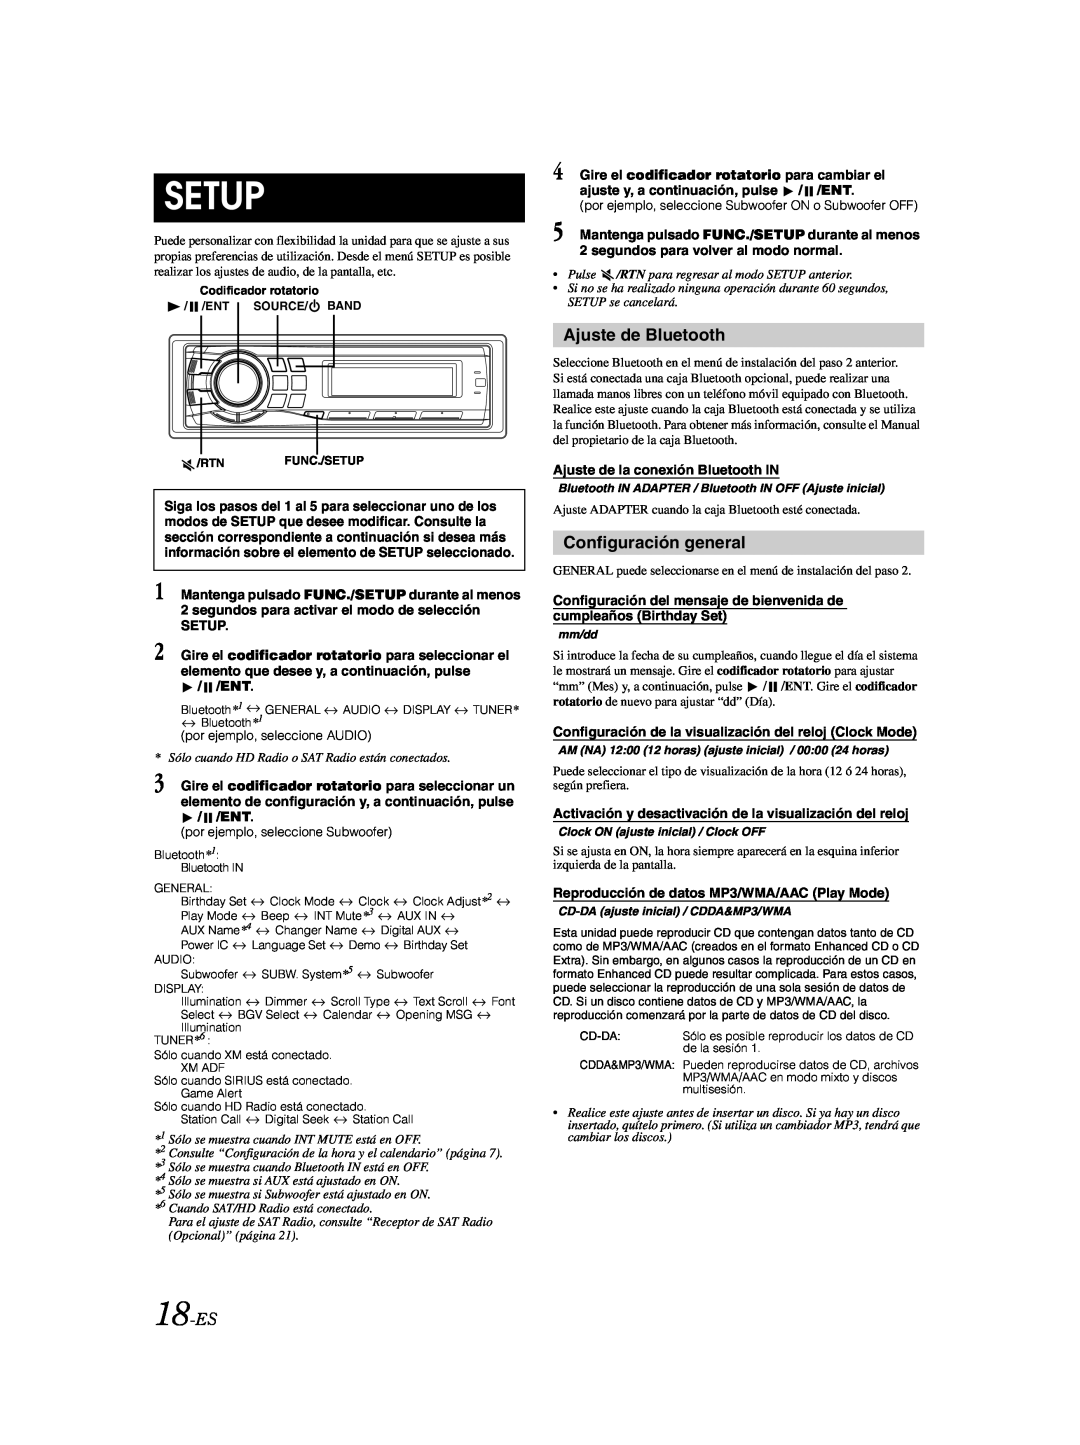 Alpine CDA-9885 owner manual Setup, Ajuste de Bluetooth, Configuración general, 18-ES 